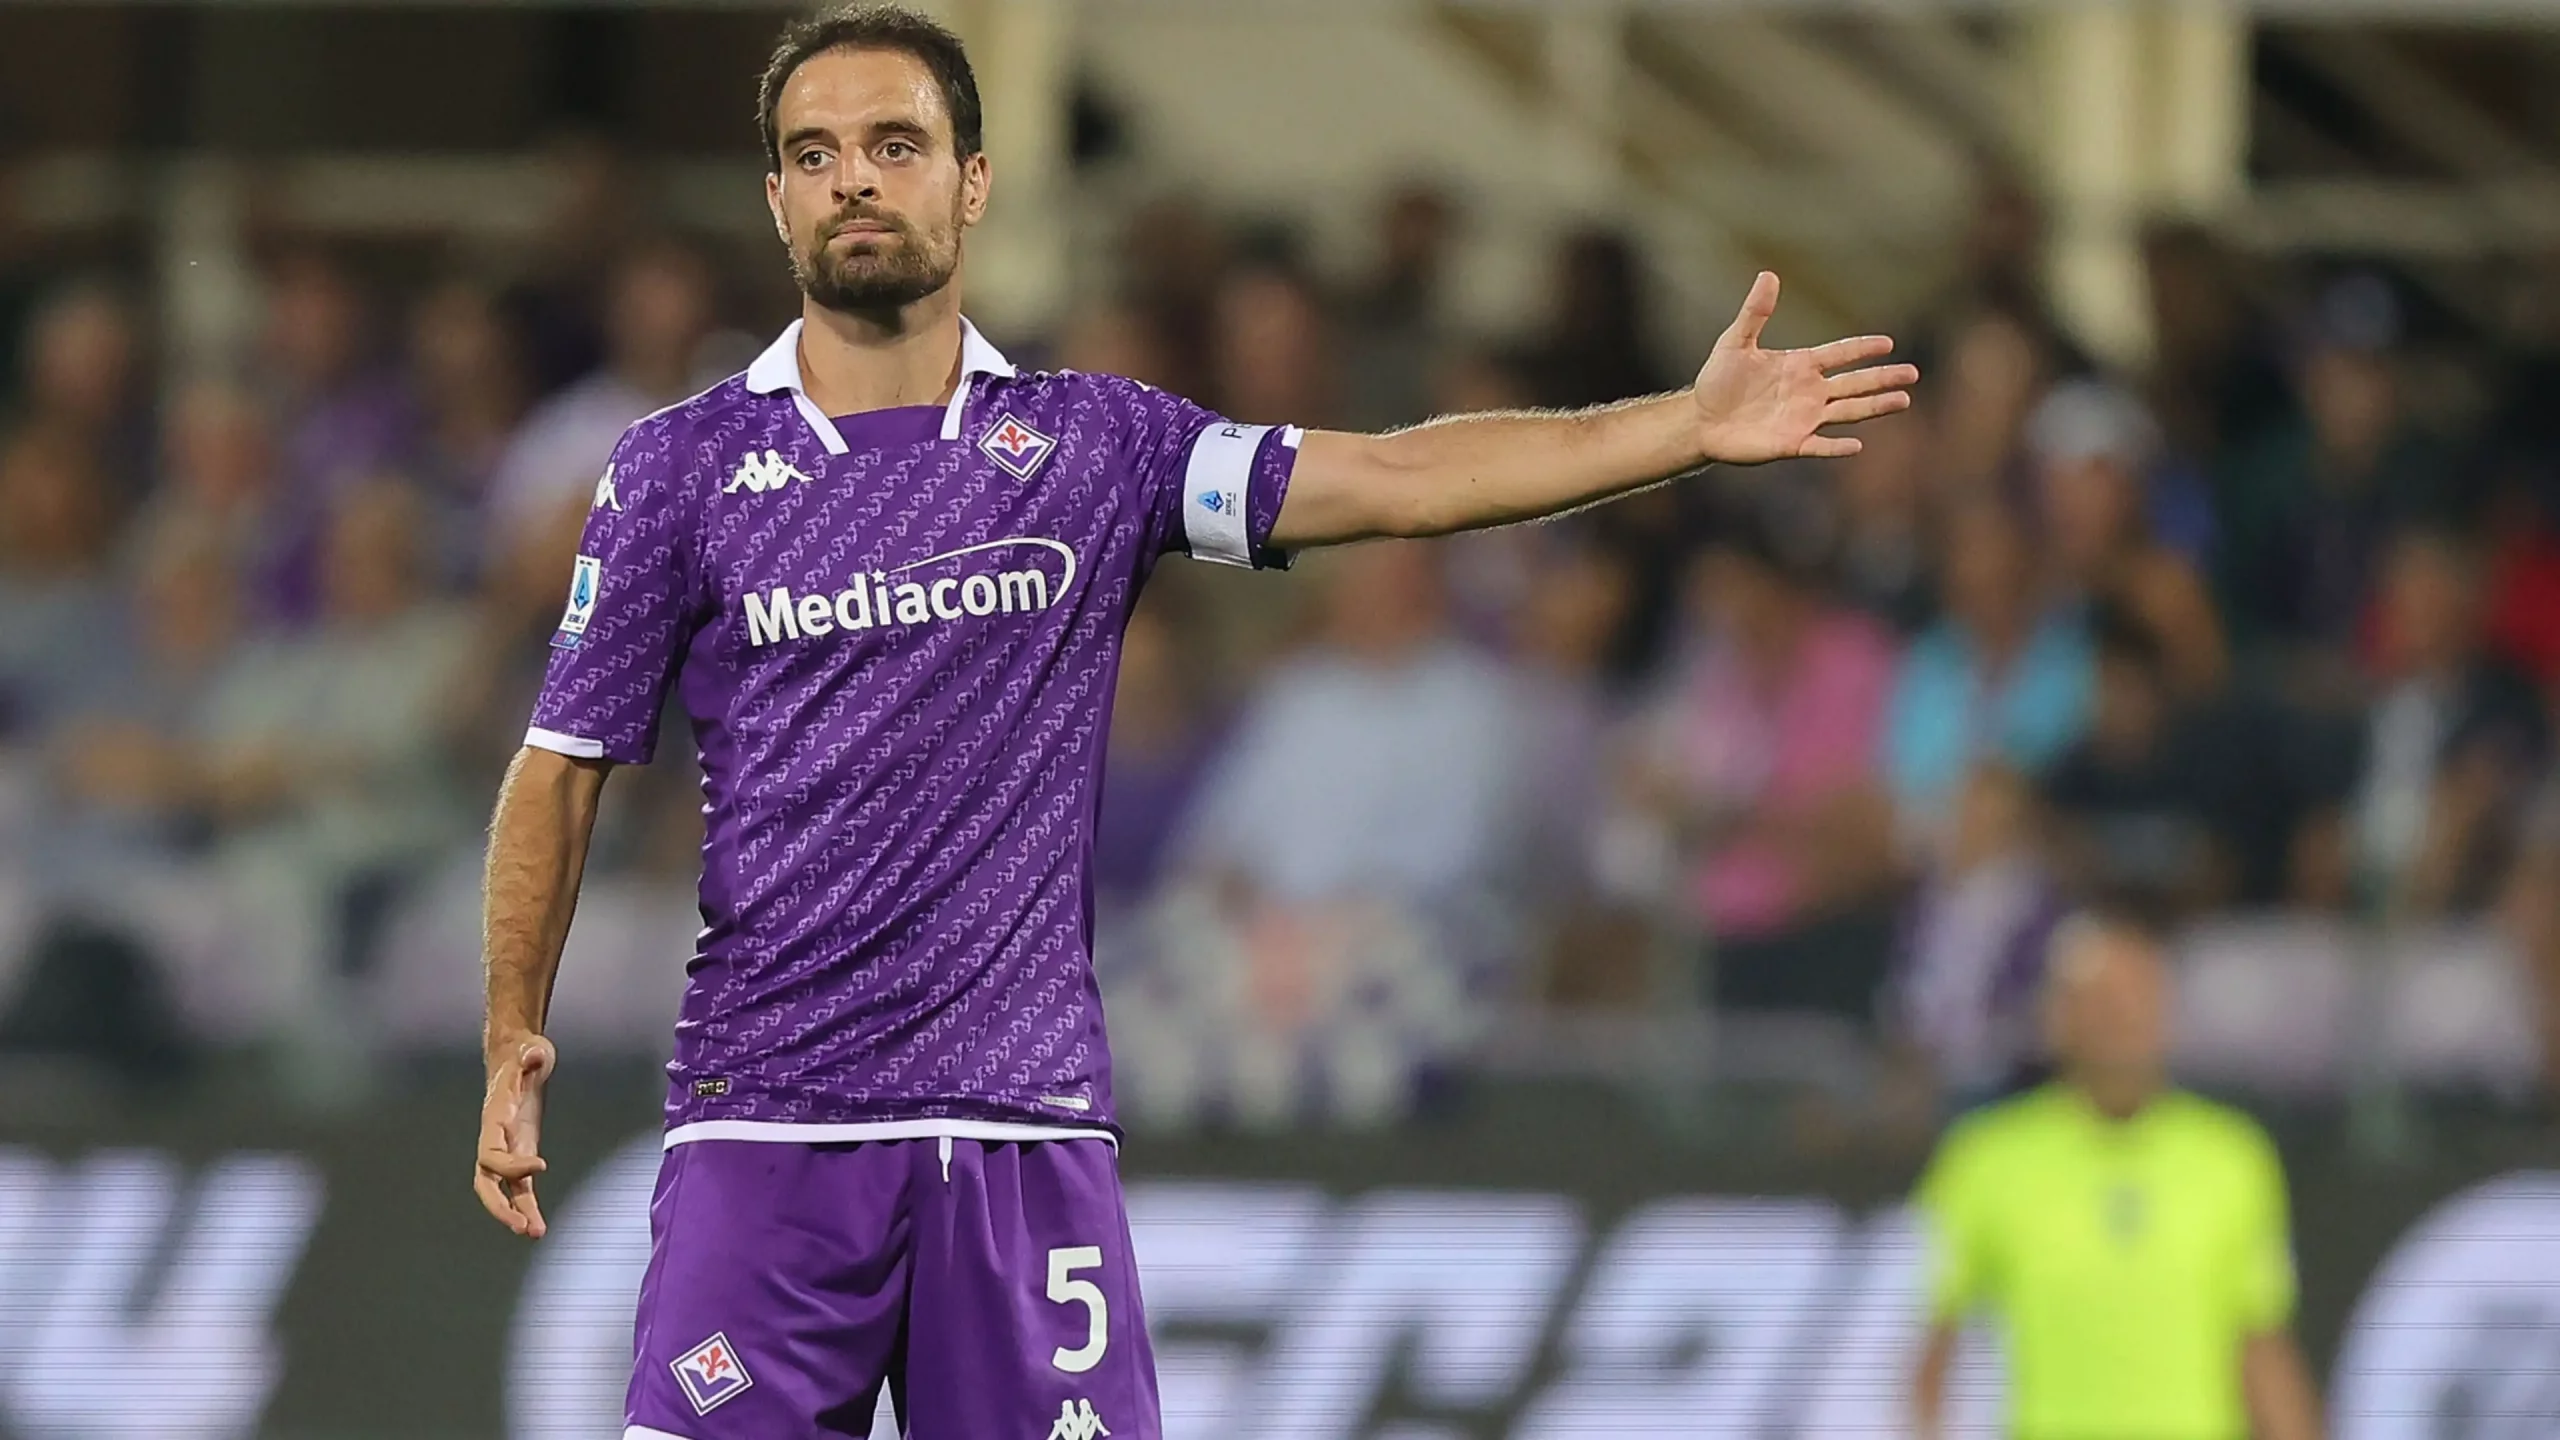 L'agente di Bonaventura tuona: "Fiorentina irrispettosa"